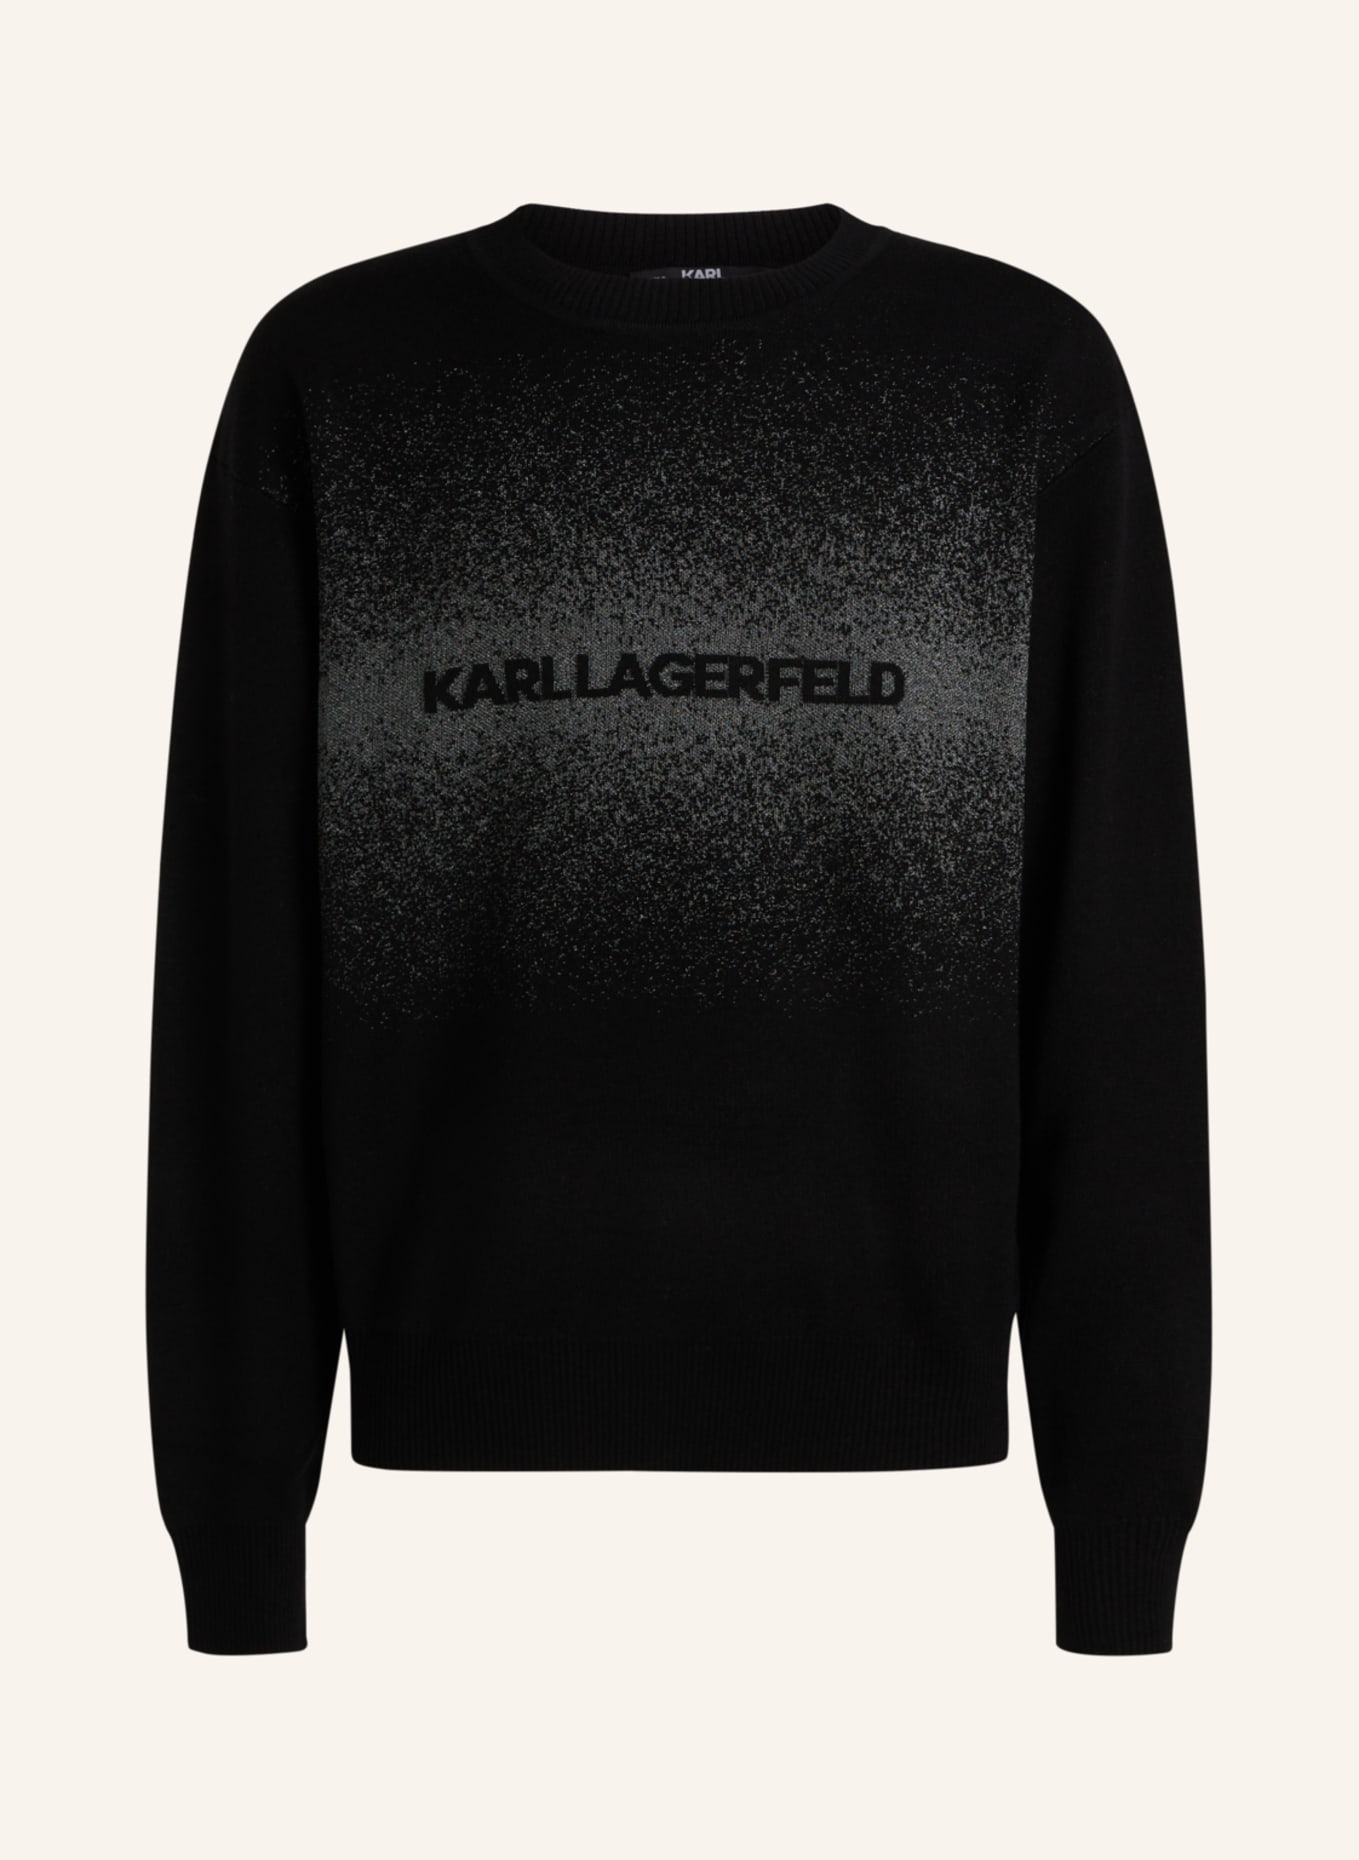 KARL LAGERFELD Sweatshirt, Farbe: SCHWARZ/ SILBER (Bild 1)